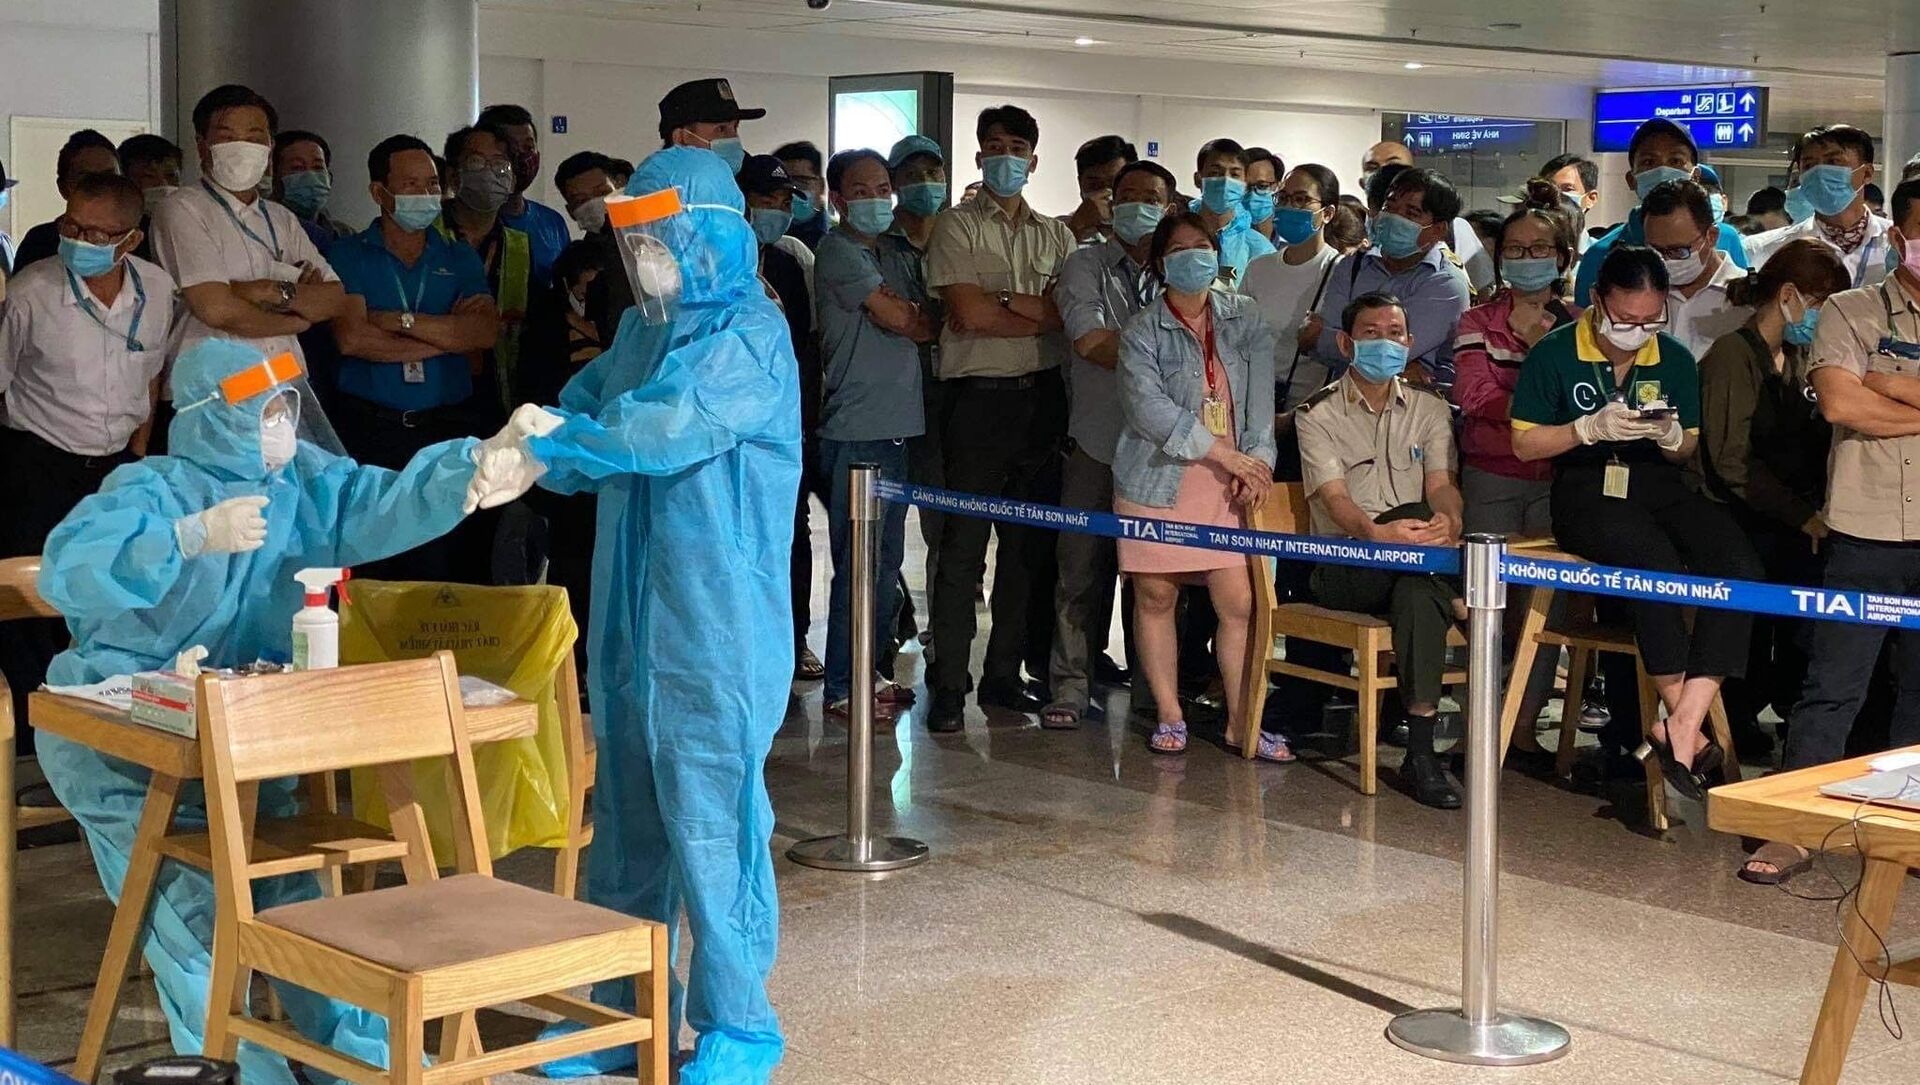 Nhân viên y tế làm thủ tục lấy mẫu xét nghiệm cho người làm việc tại sân bay Tân Sơn Nhất, ngày 6/2. - Sputnik Việt Nam, 1920, 14.02.2021